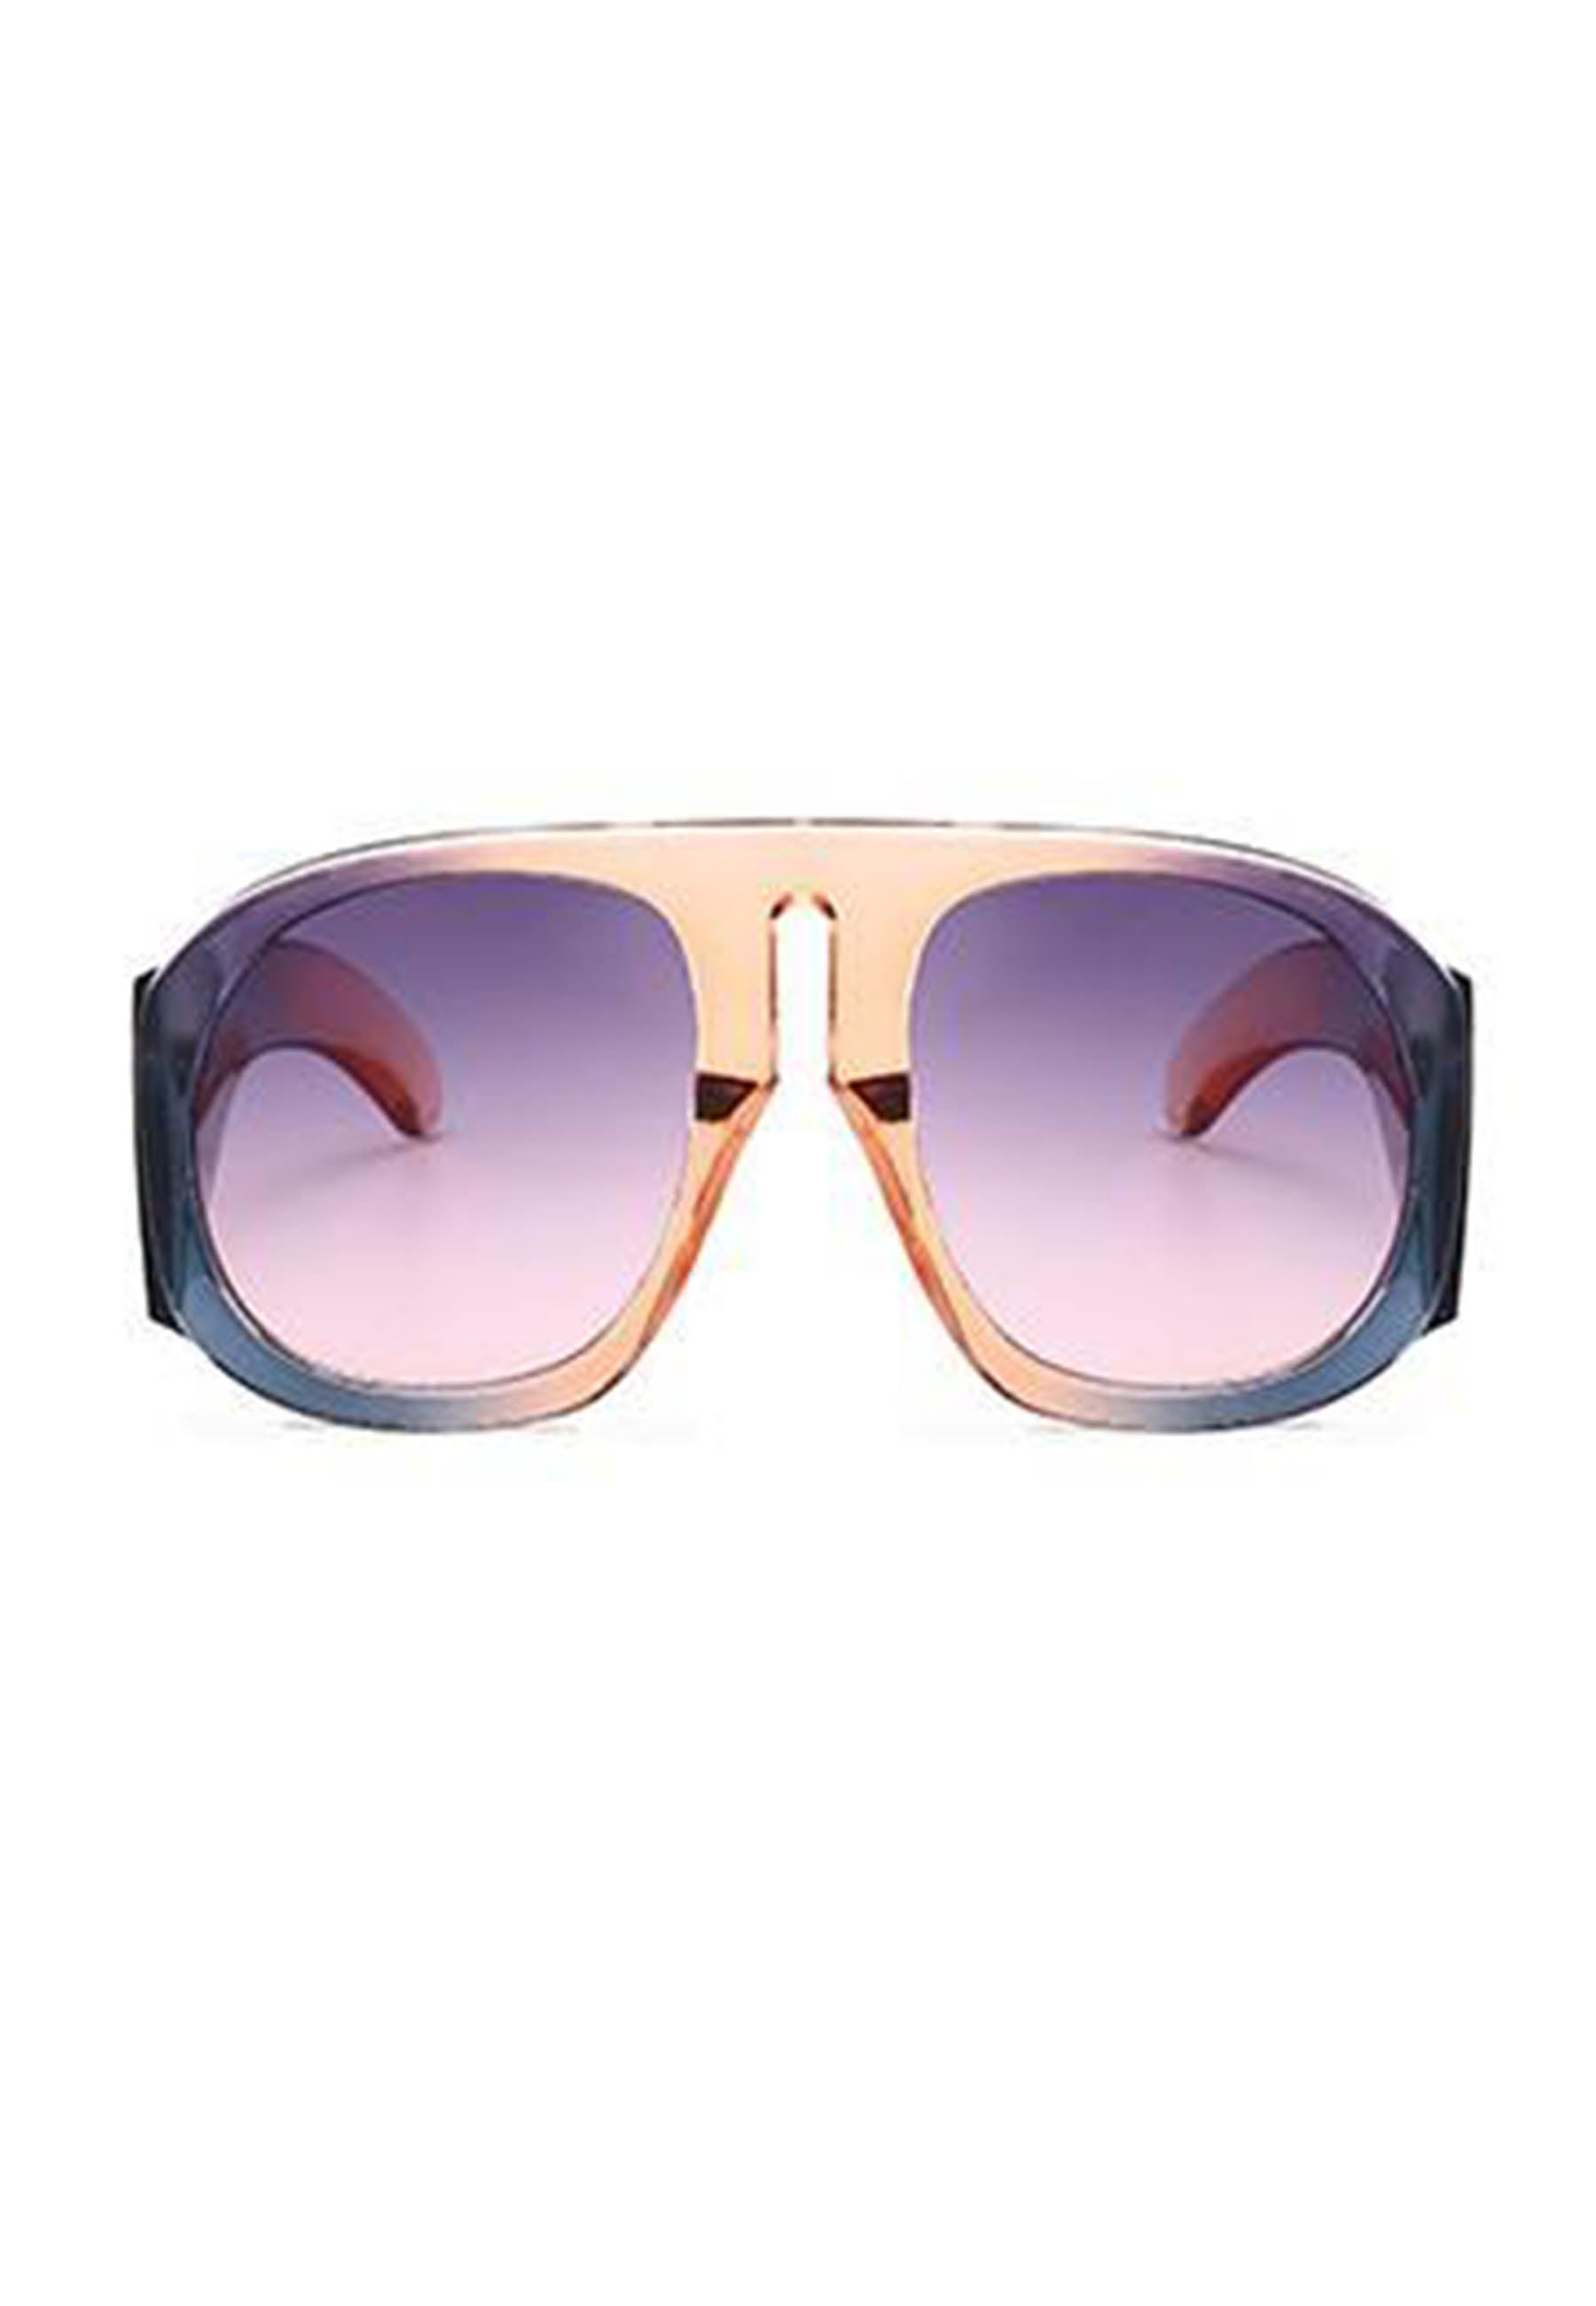 Avant-Garde Paris Round Retro Oversized Sunglasses